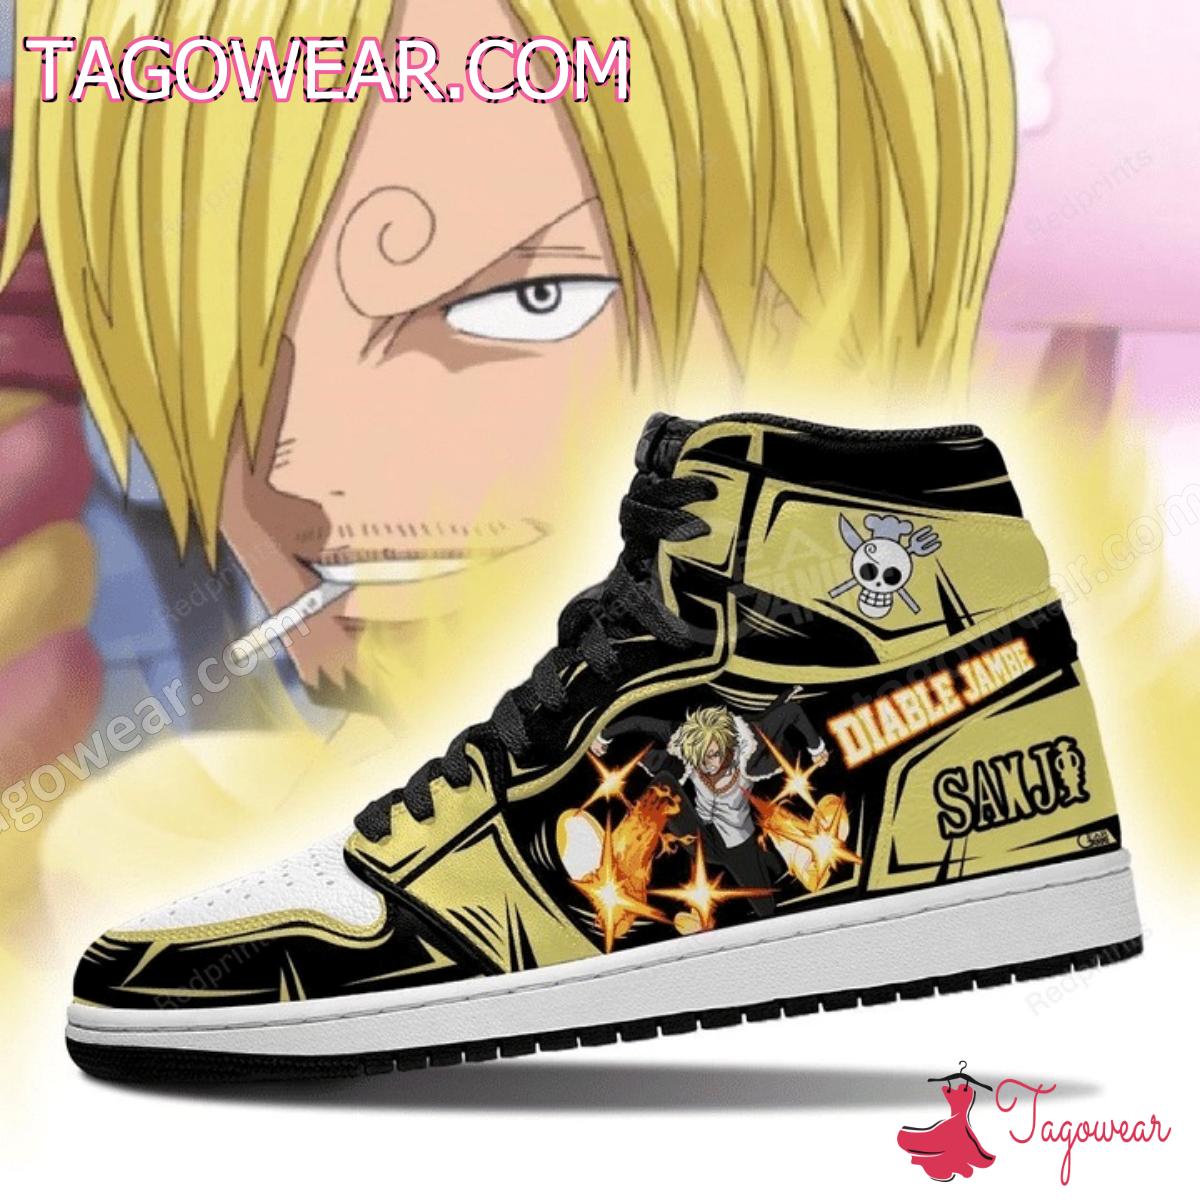 Sanji One Piece Diable Jambe Air Jordan High Top Shoes